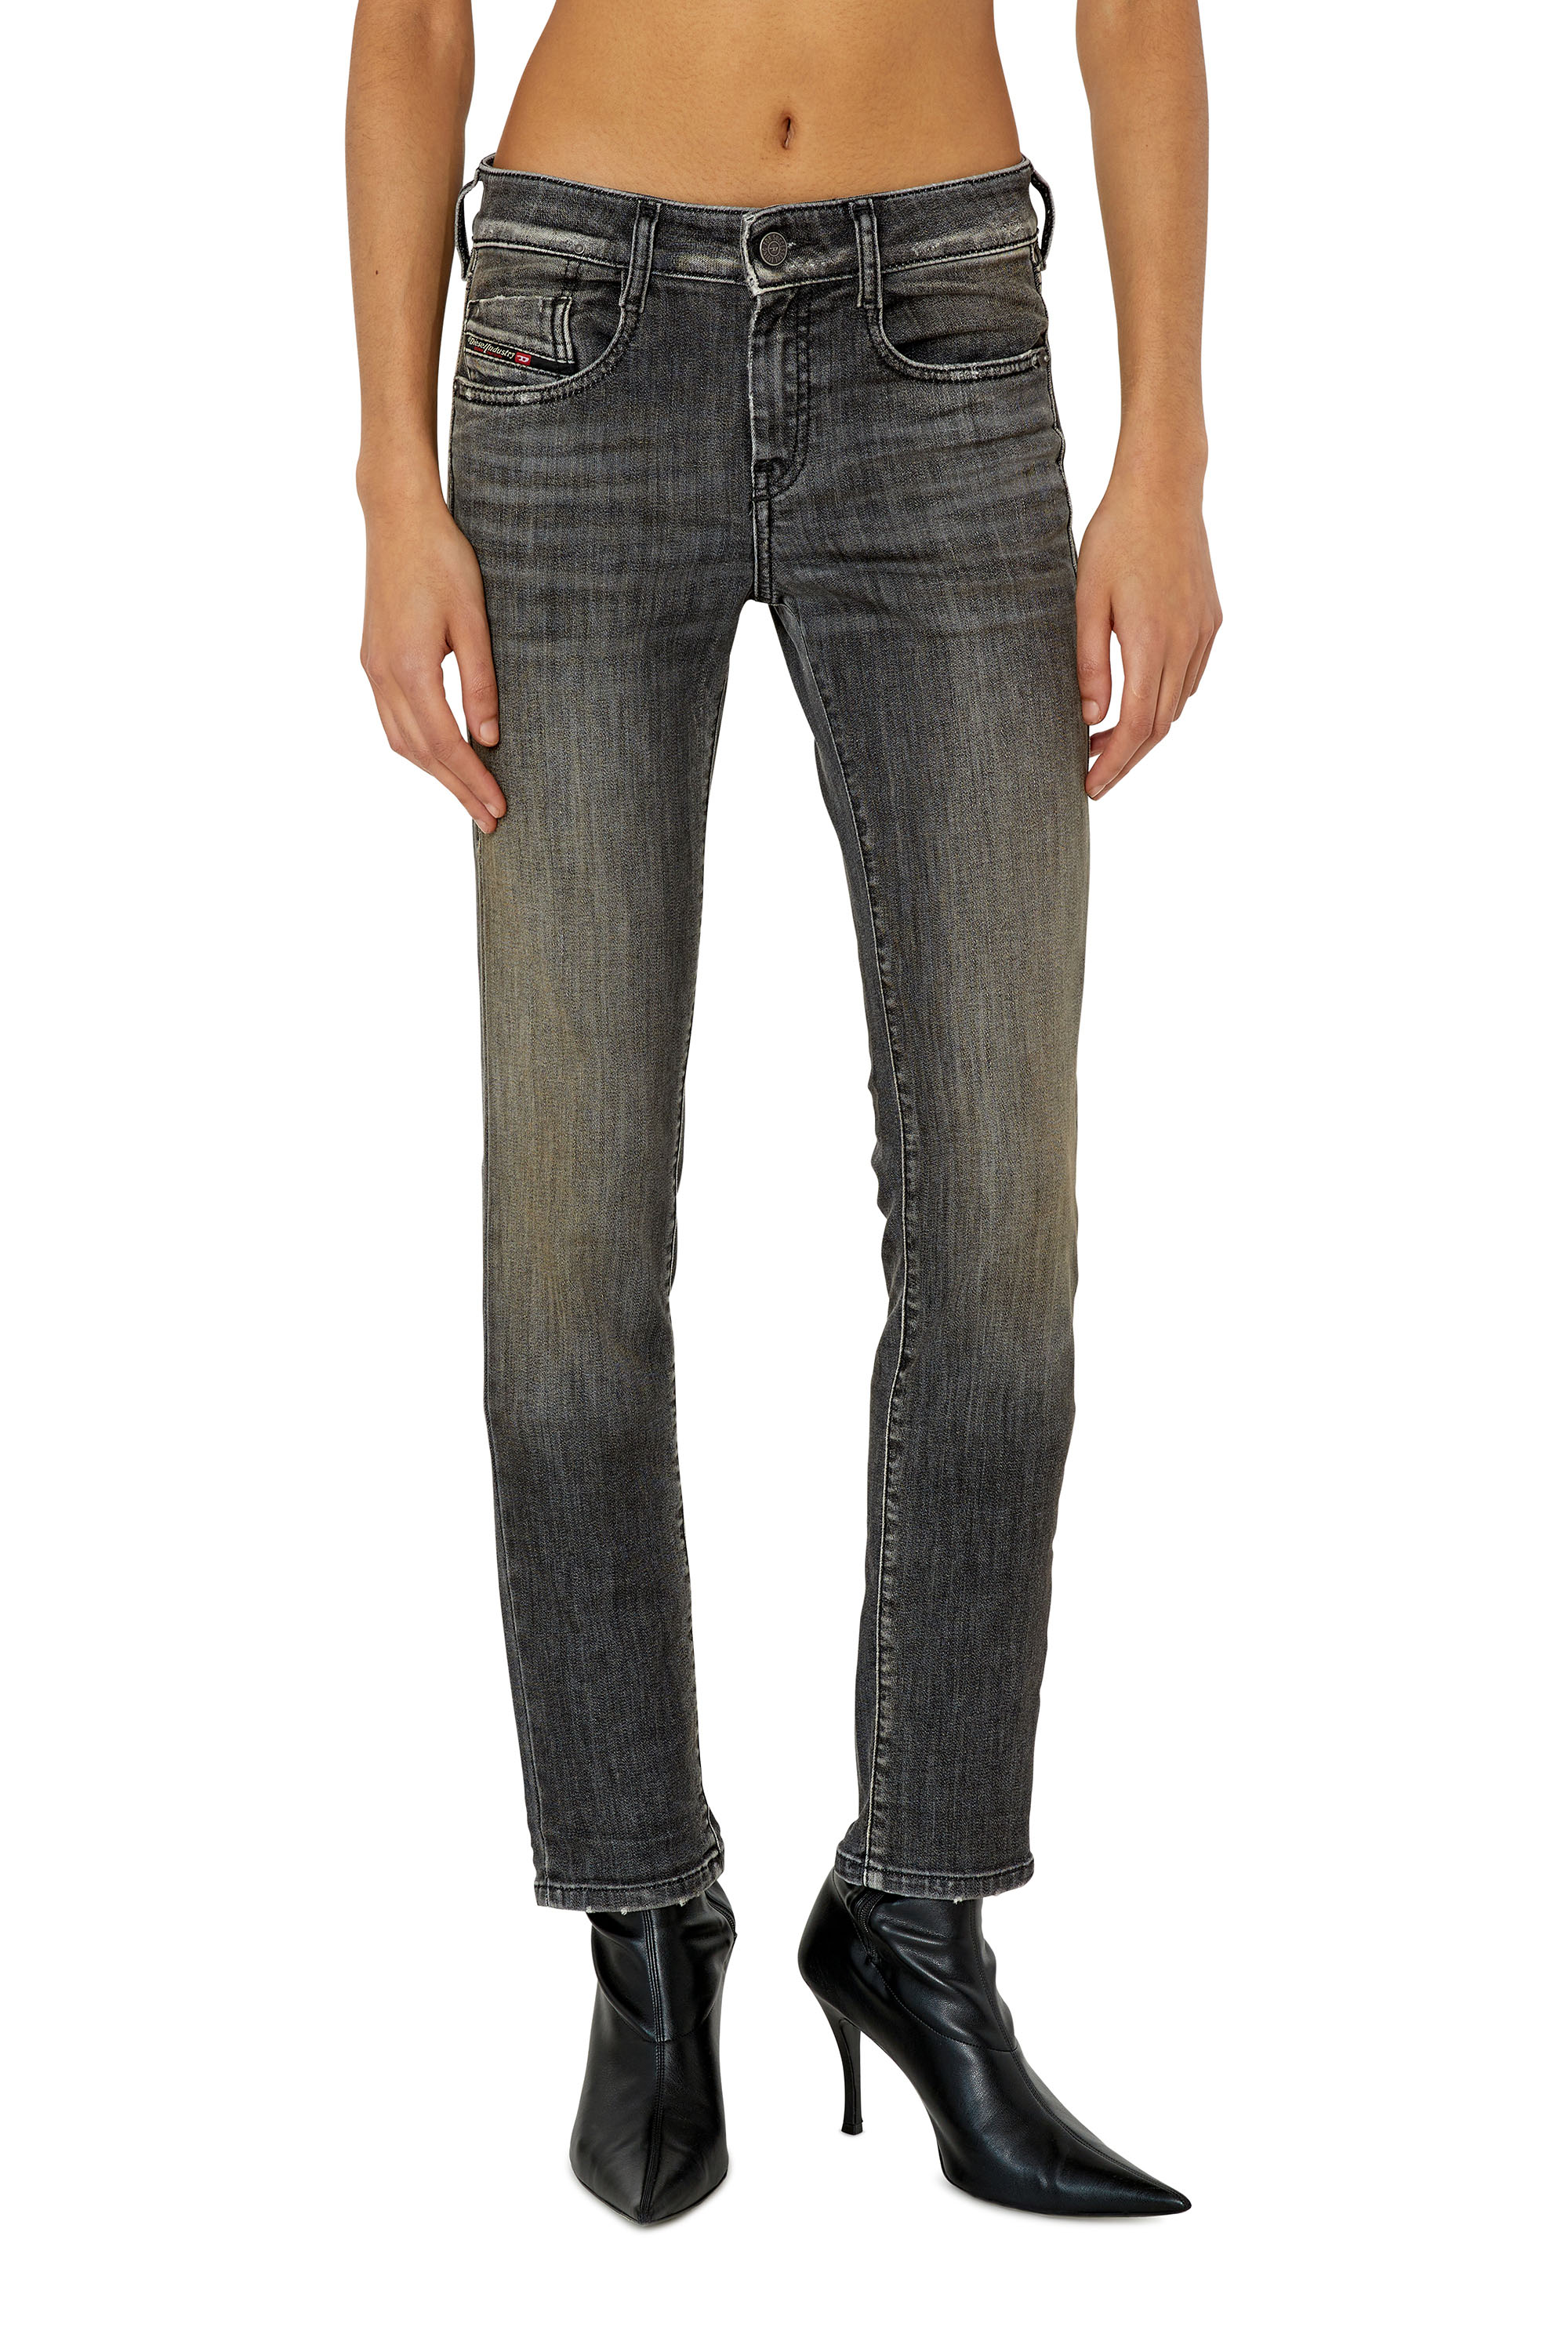 Diesel Jeans - D-OLLIES-T Sweat jeans black